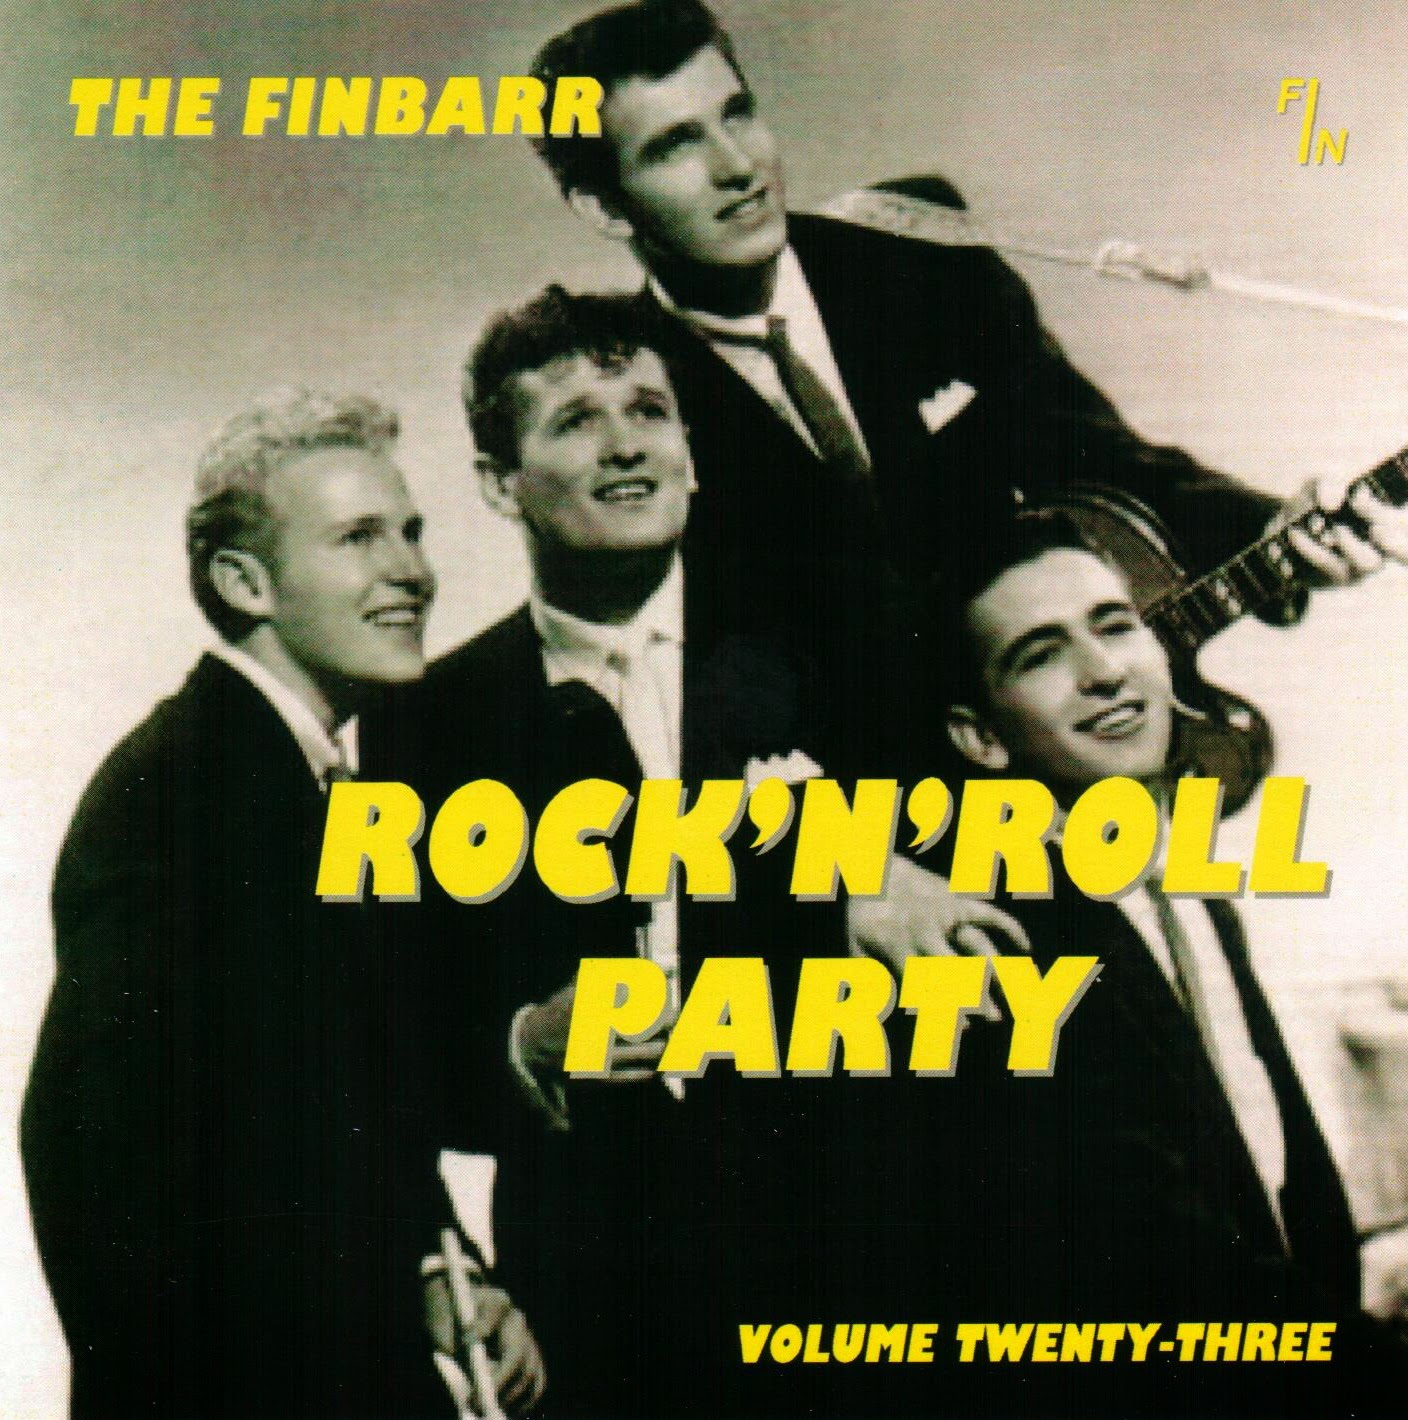 ROCK ON !: The Finbarr Rock'n' Roll Party - Vol. 23